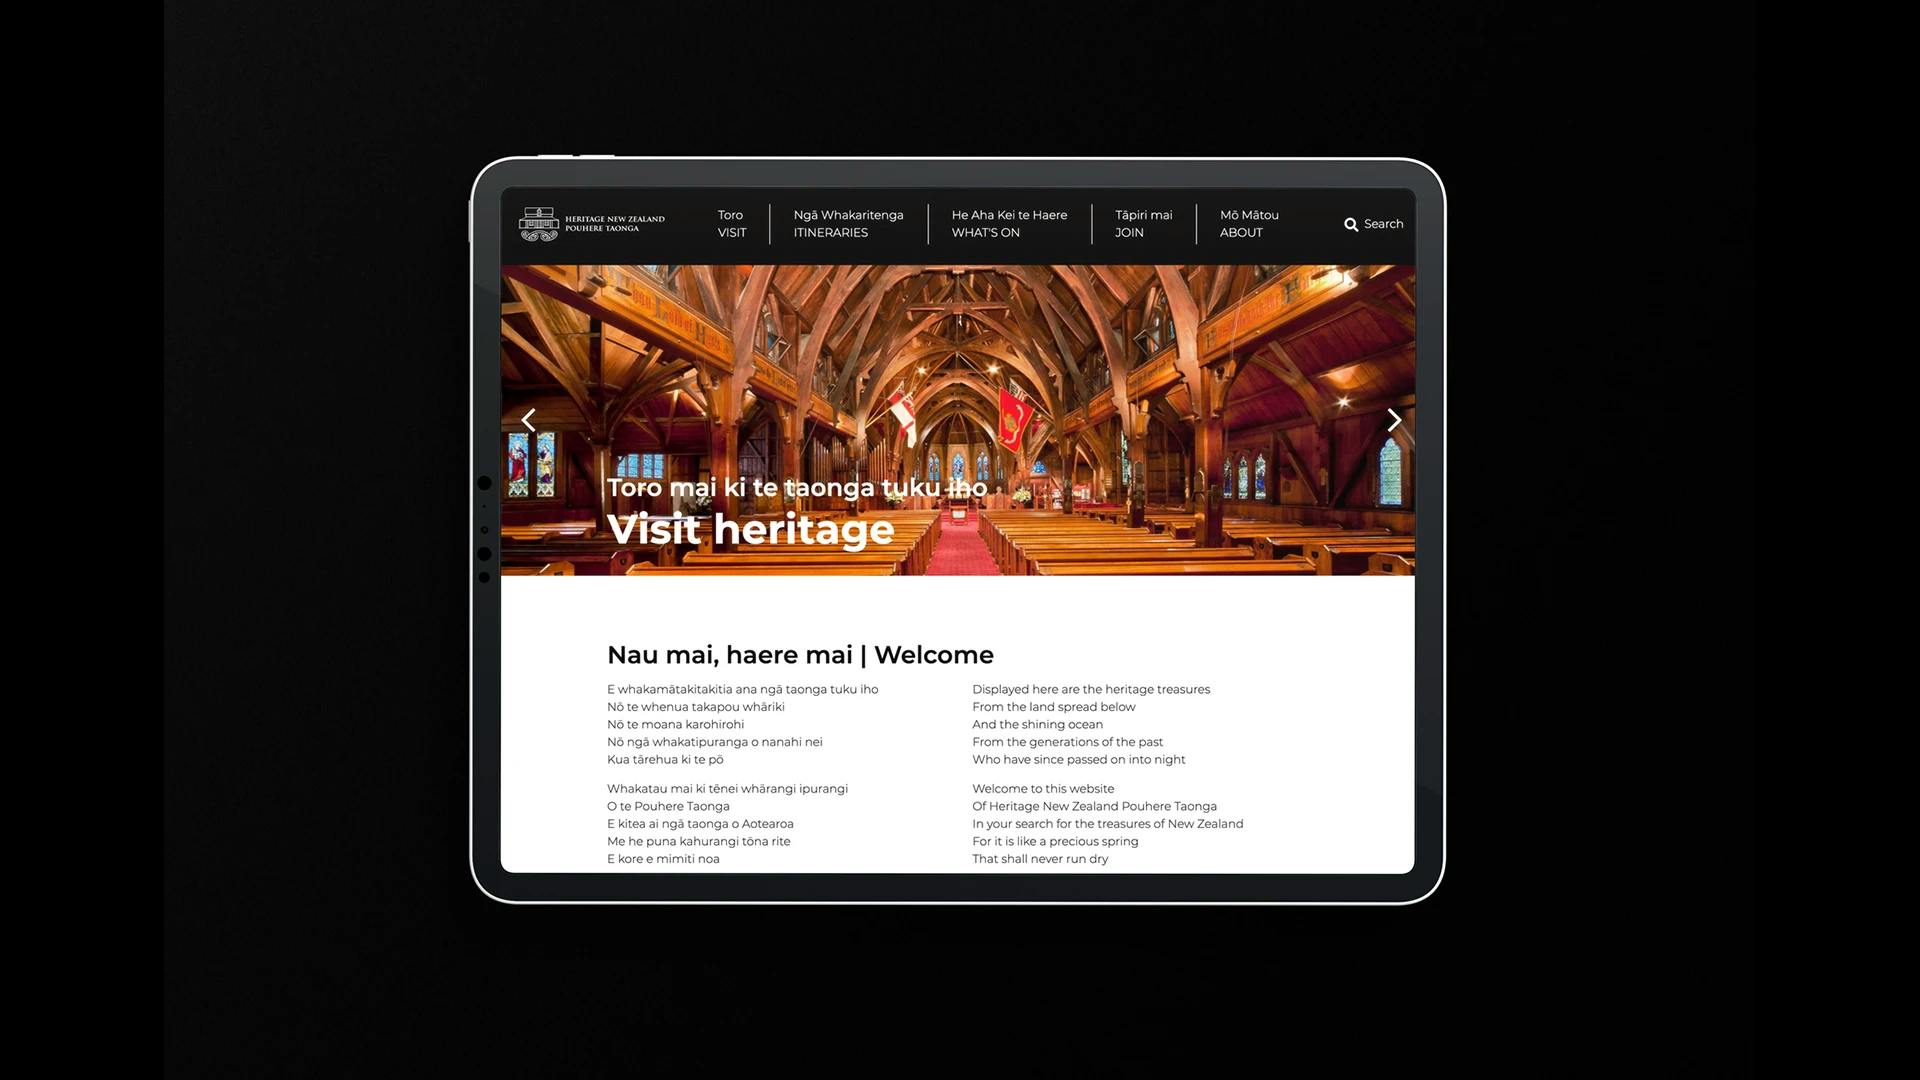 firebrand visit heritage website